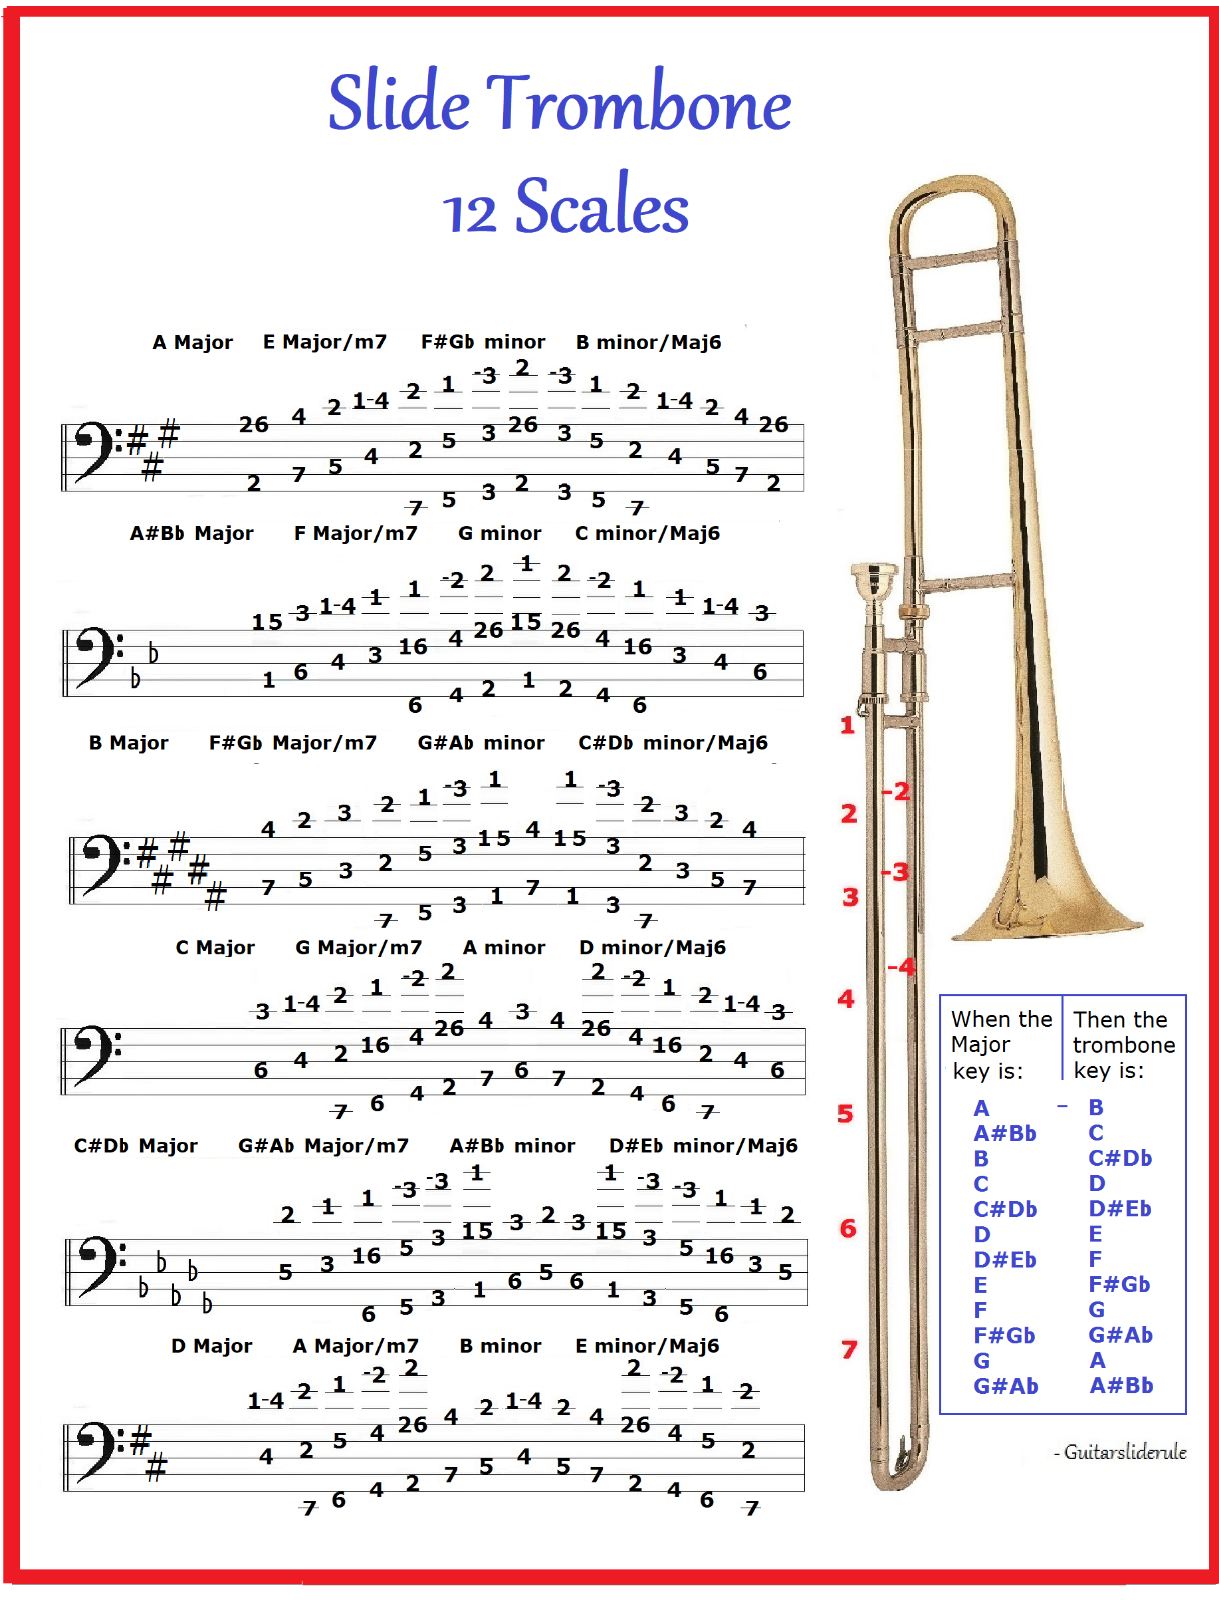 Bass Trombone Chart